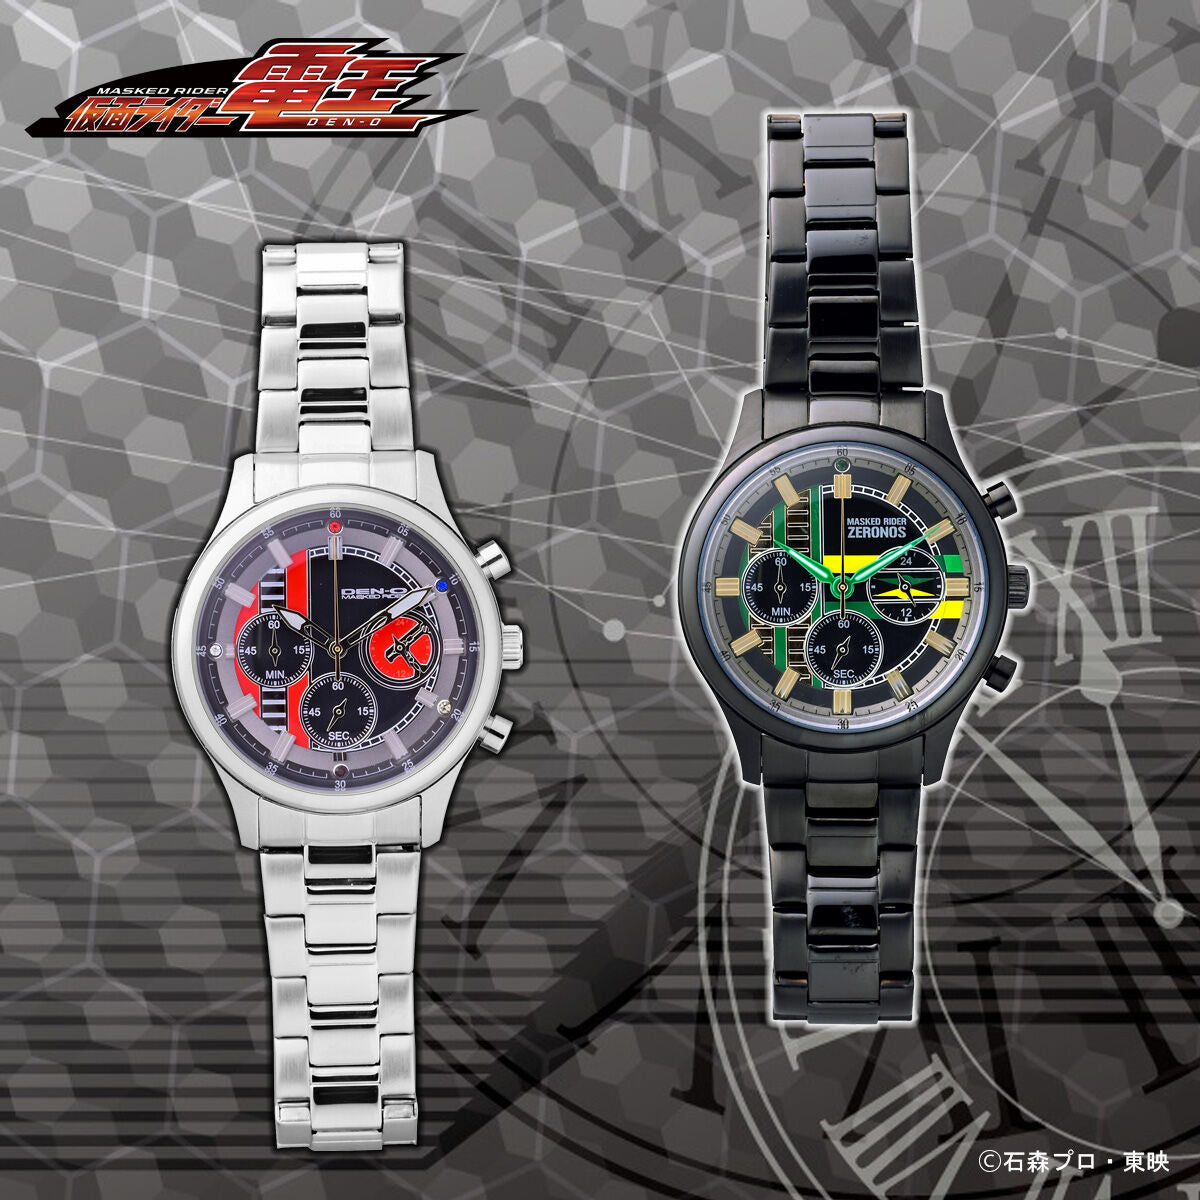 Kamen Rider Den-O & Zeronos Watches